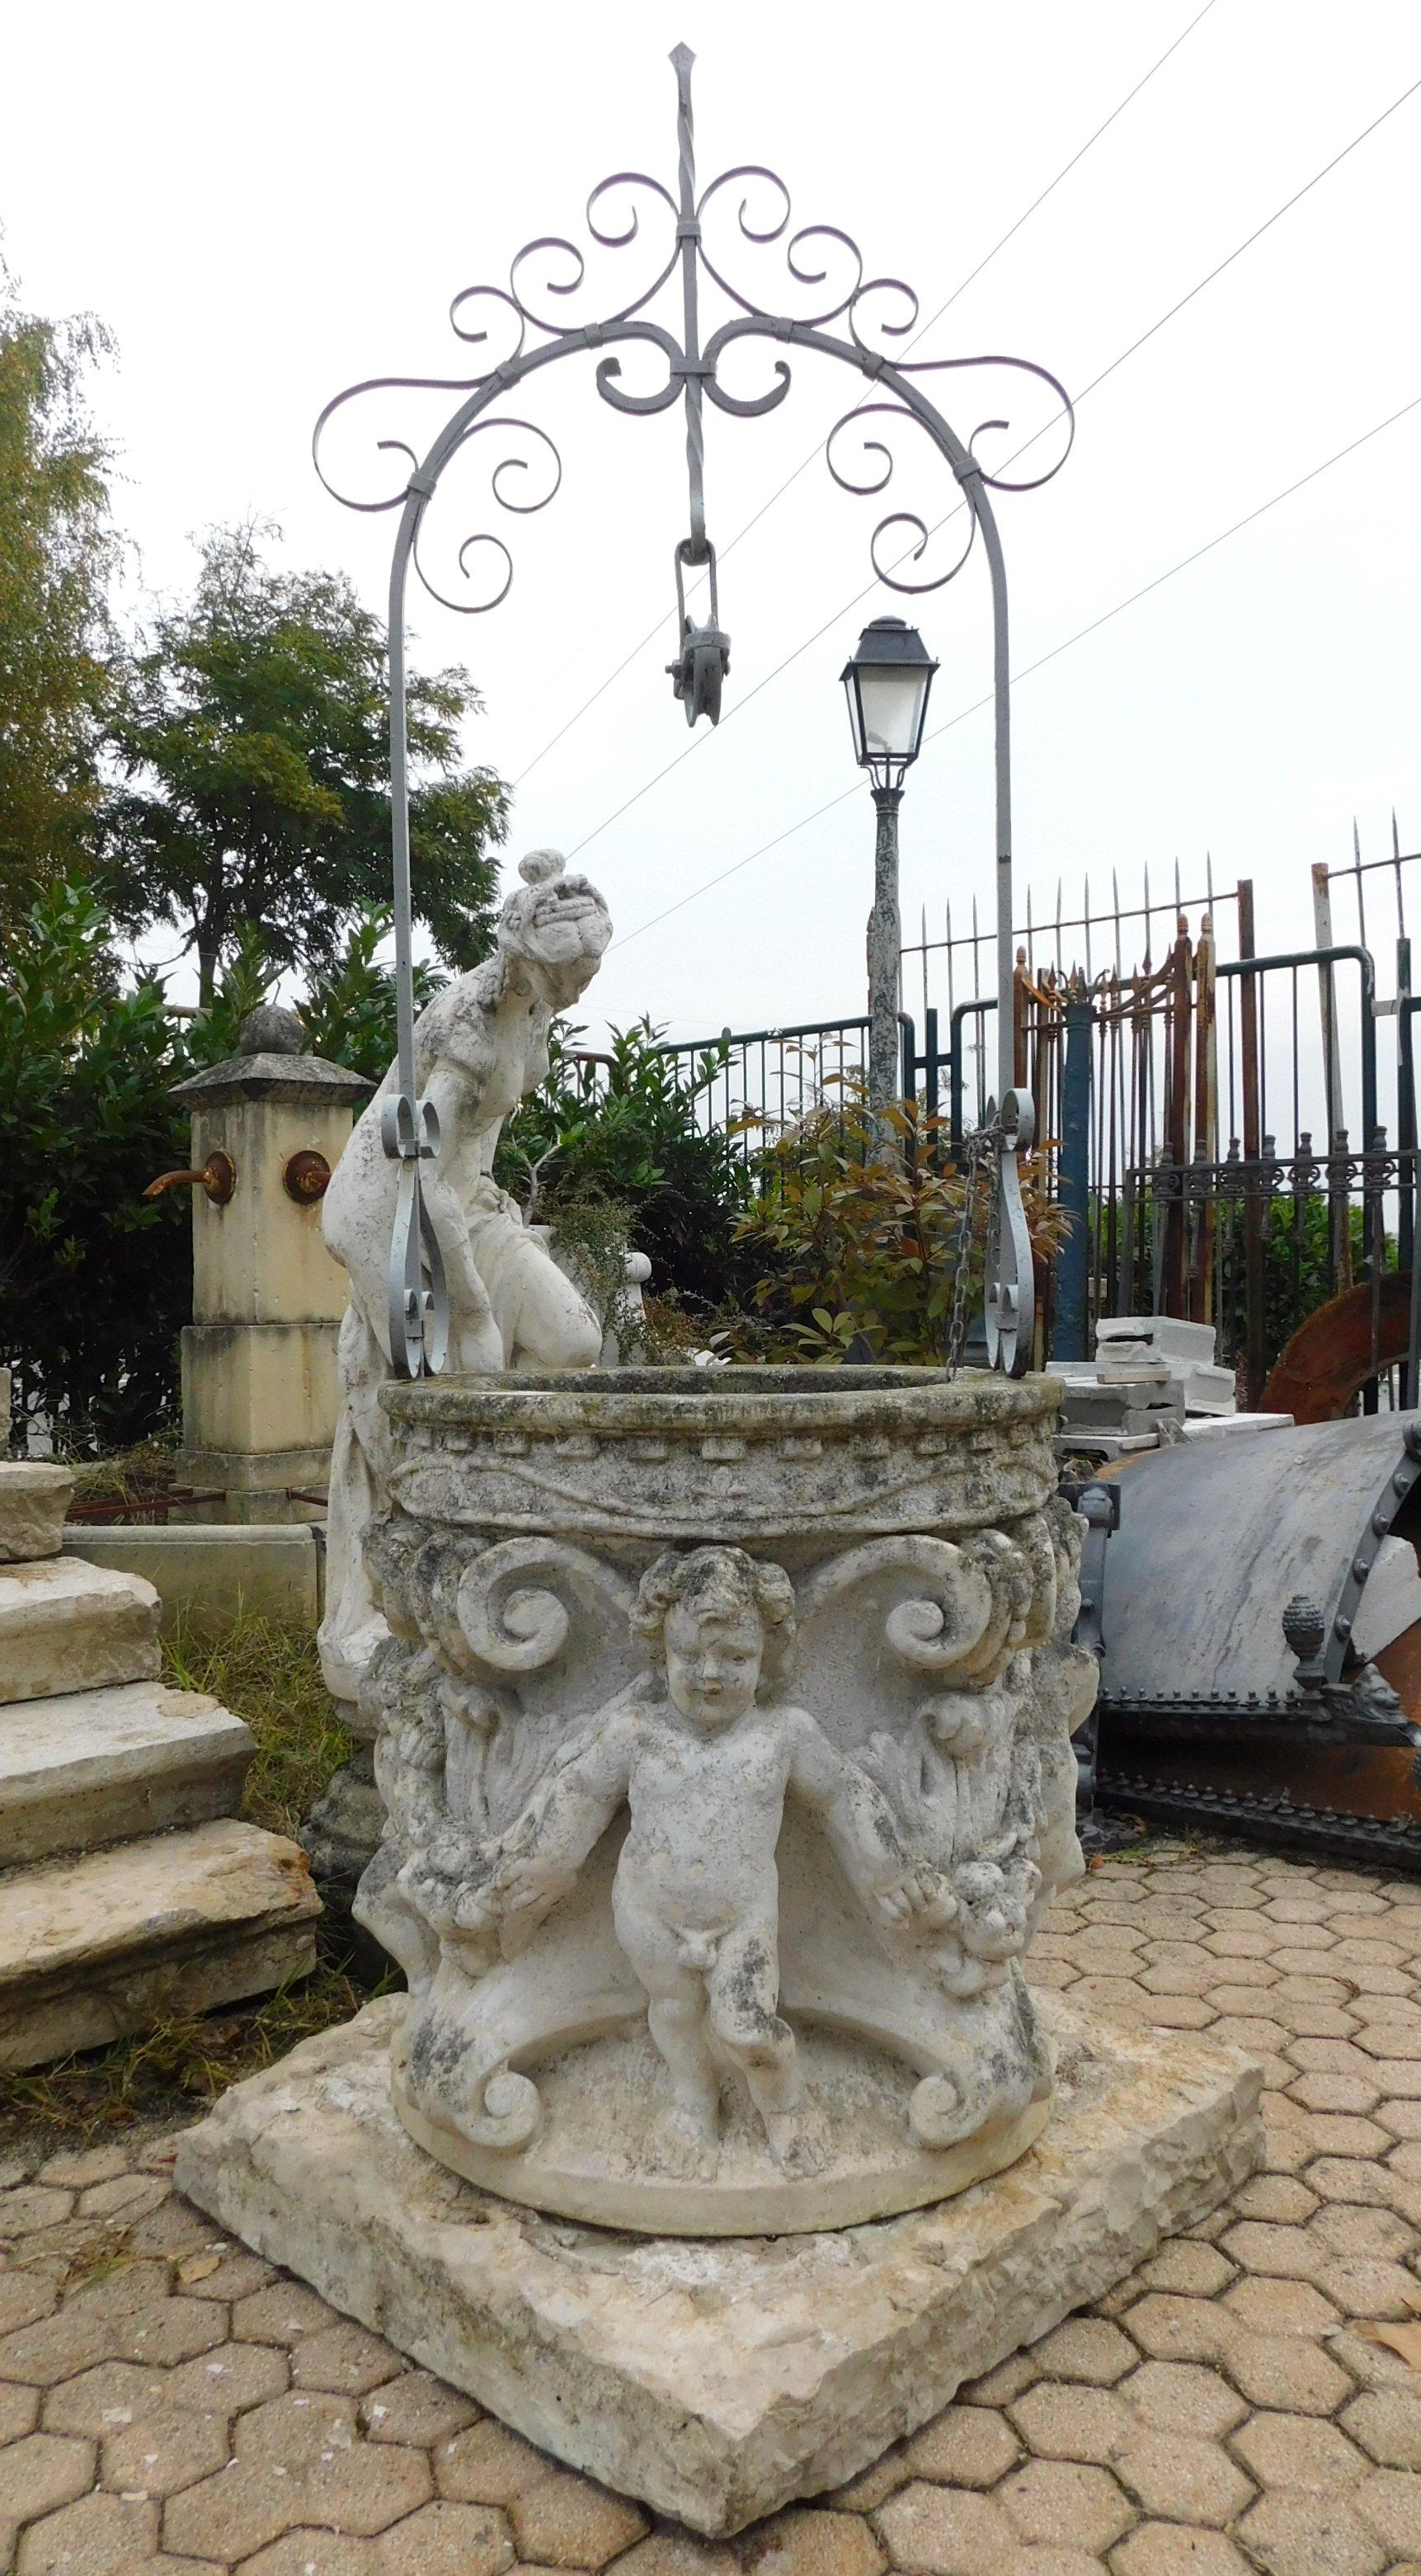 Ancien puits circulaire, en pierre ancienne de Vicence, avec des sculptures artisanales d'angelots, des festons et des décorations de l'époque, réalisées à la main au XIXe siècle dans le nord de l'Italie, pour le jardin d'un palais noble.
Puits en